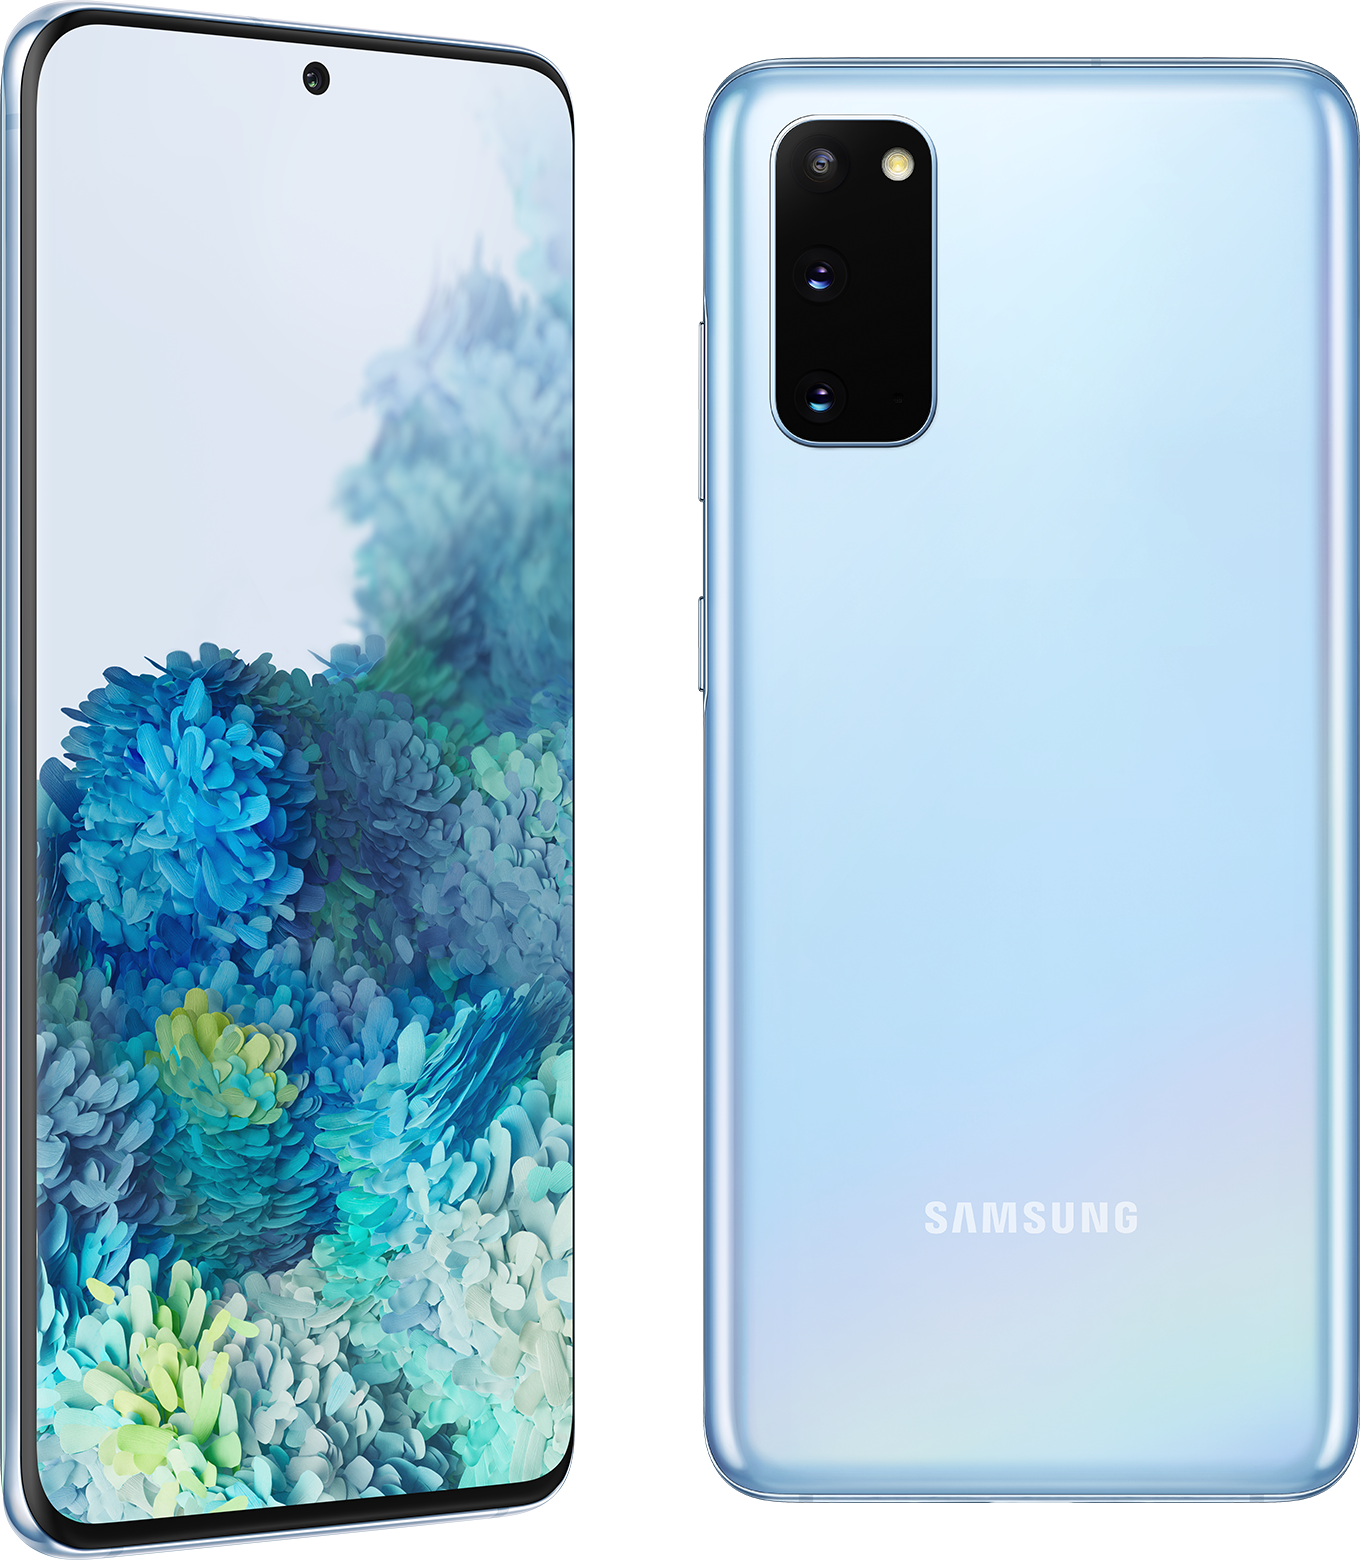 Samsung Galaxy S20 5G - Cloud Blue, 6.2" inch, 5G, 128GB